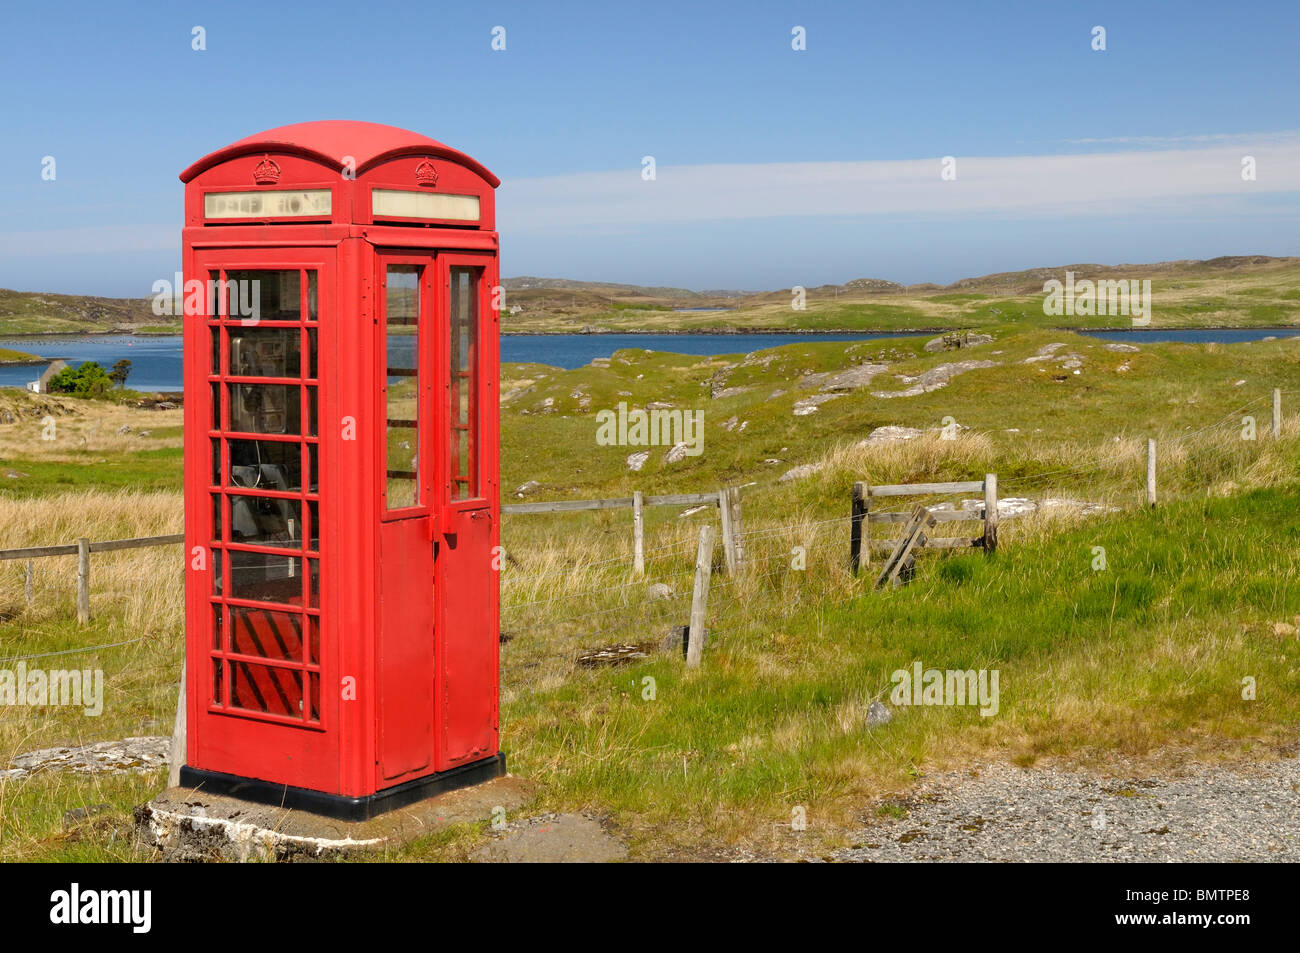 Old style red UK téléphone fort dans un cadre rural Banque D'Images